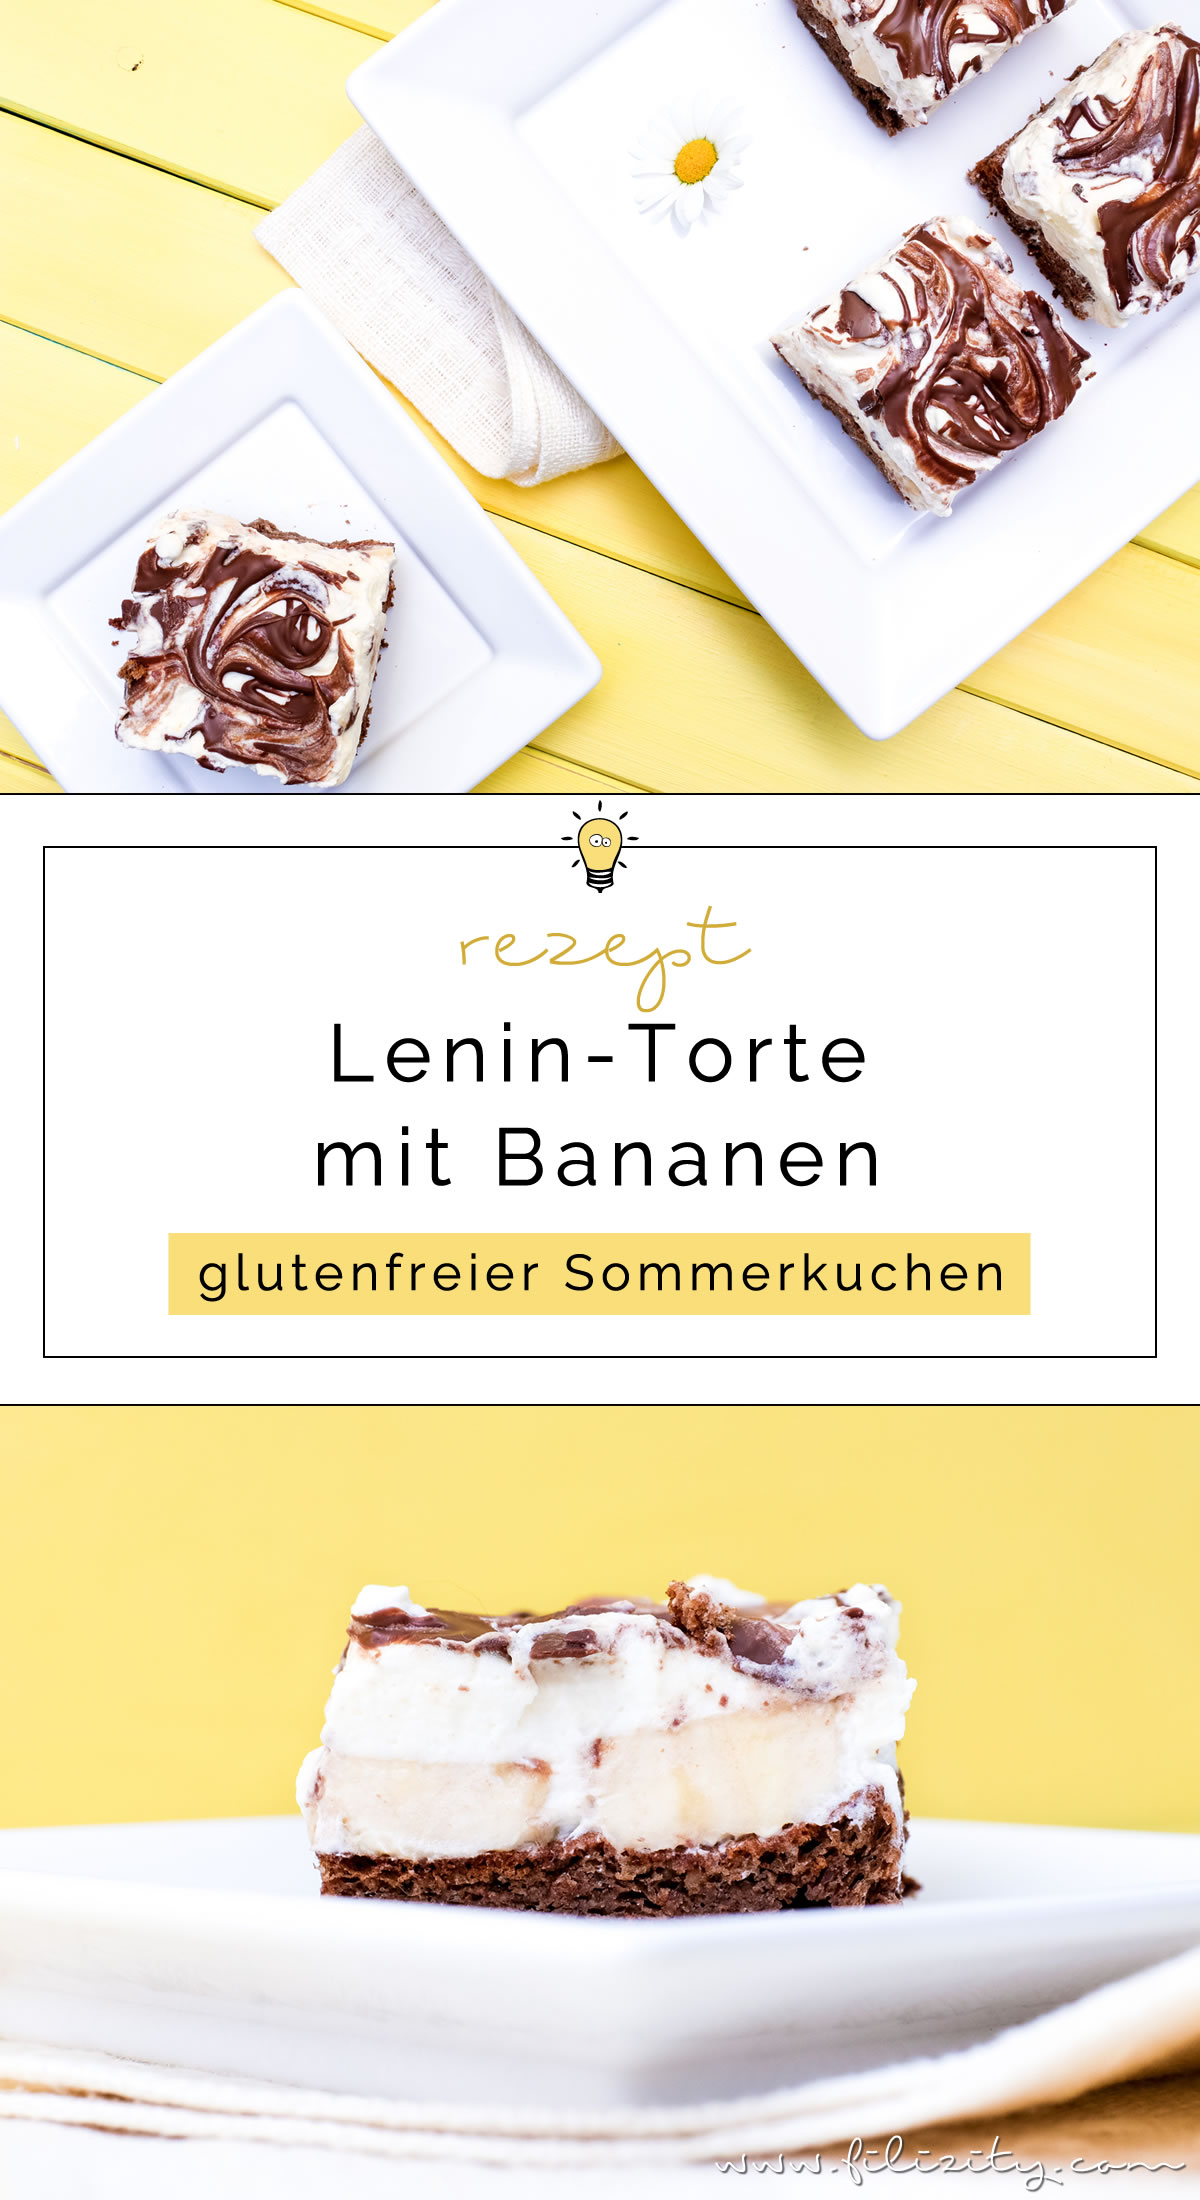 Rezept für Lenin-Torte mit Bananen - Glutenfreier Sommerkuchen | Filizity.com | Food-Blog aus dem Rheinland #sommer #torte #kuchen